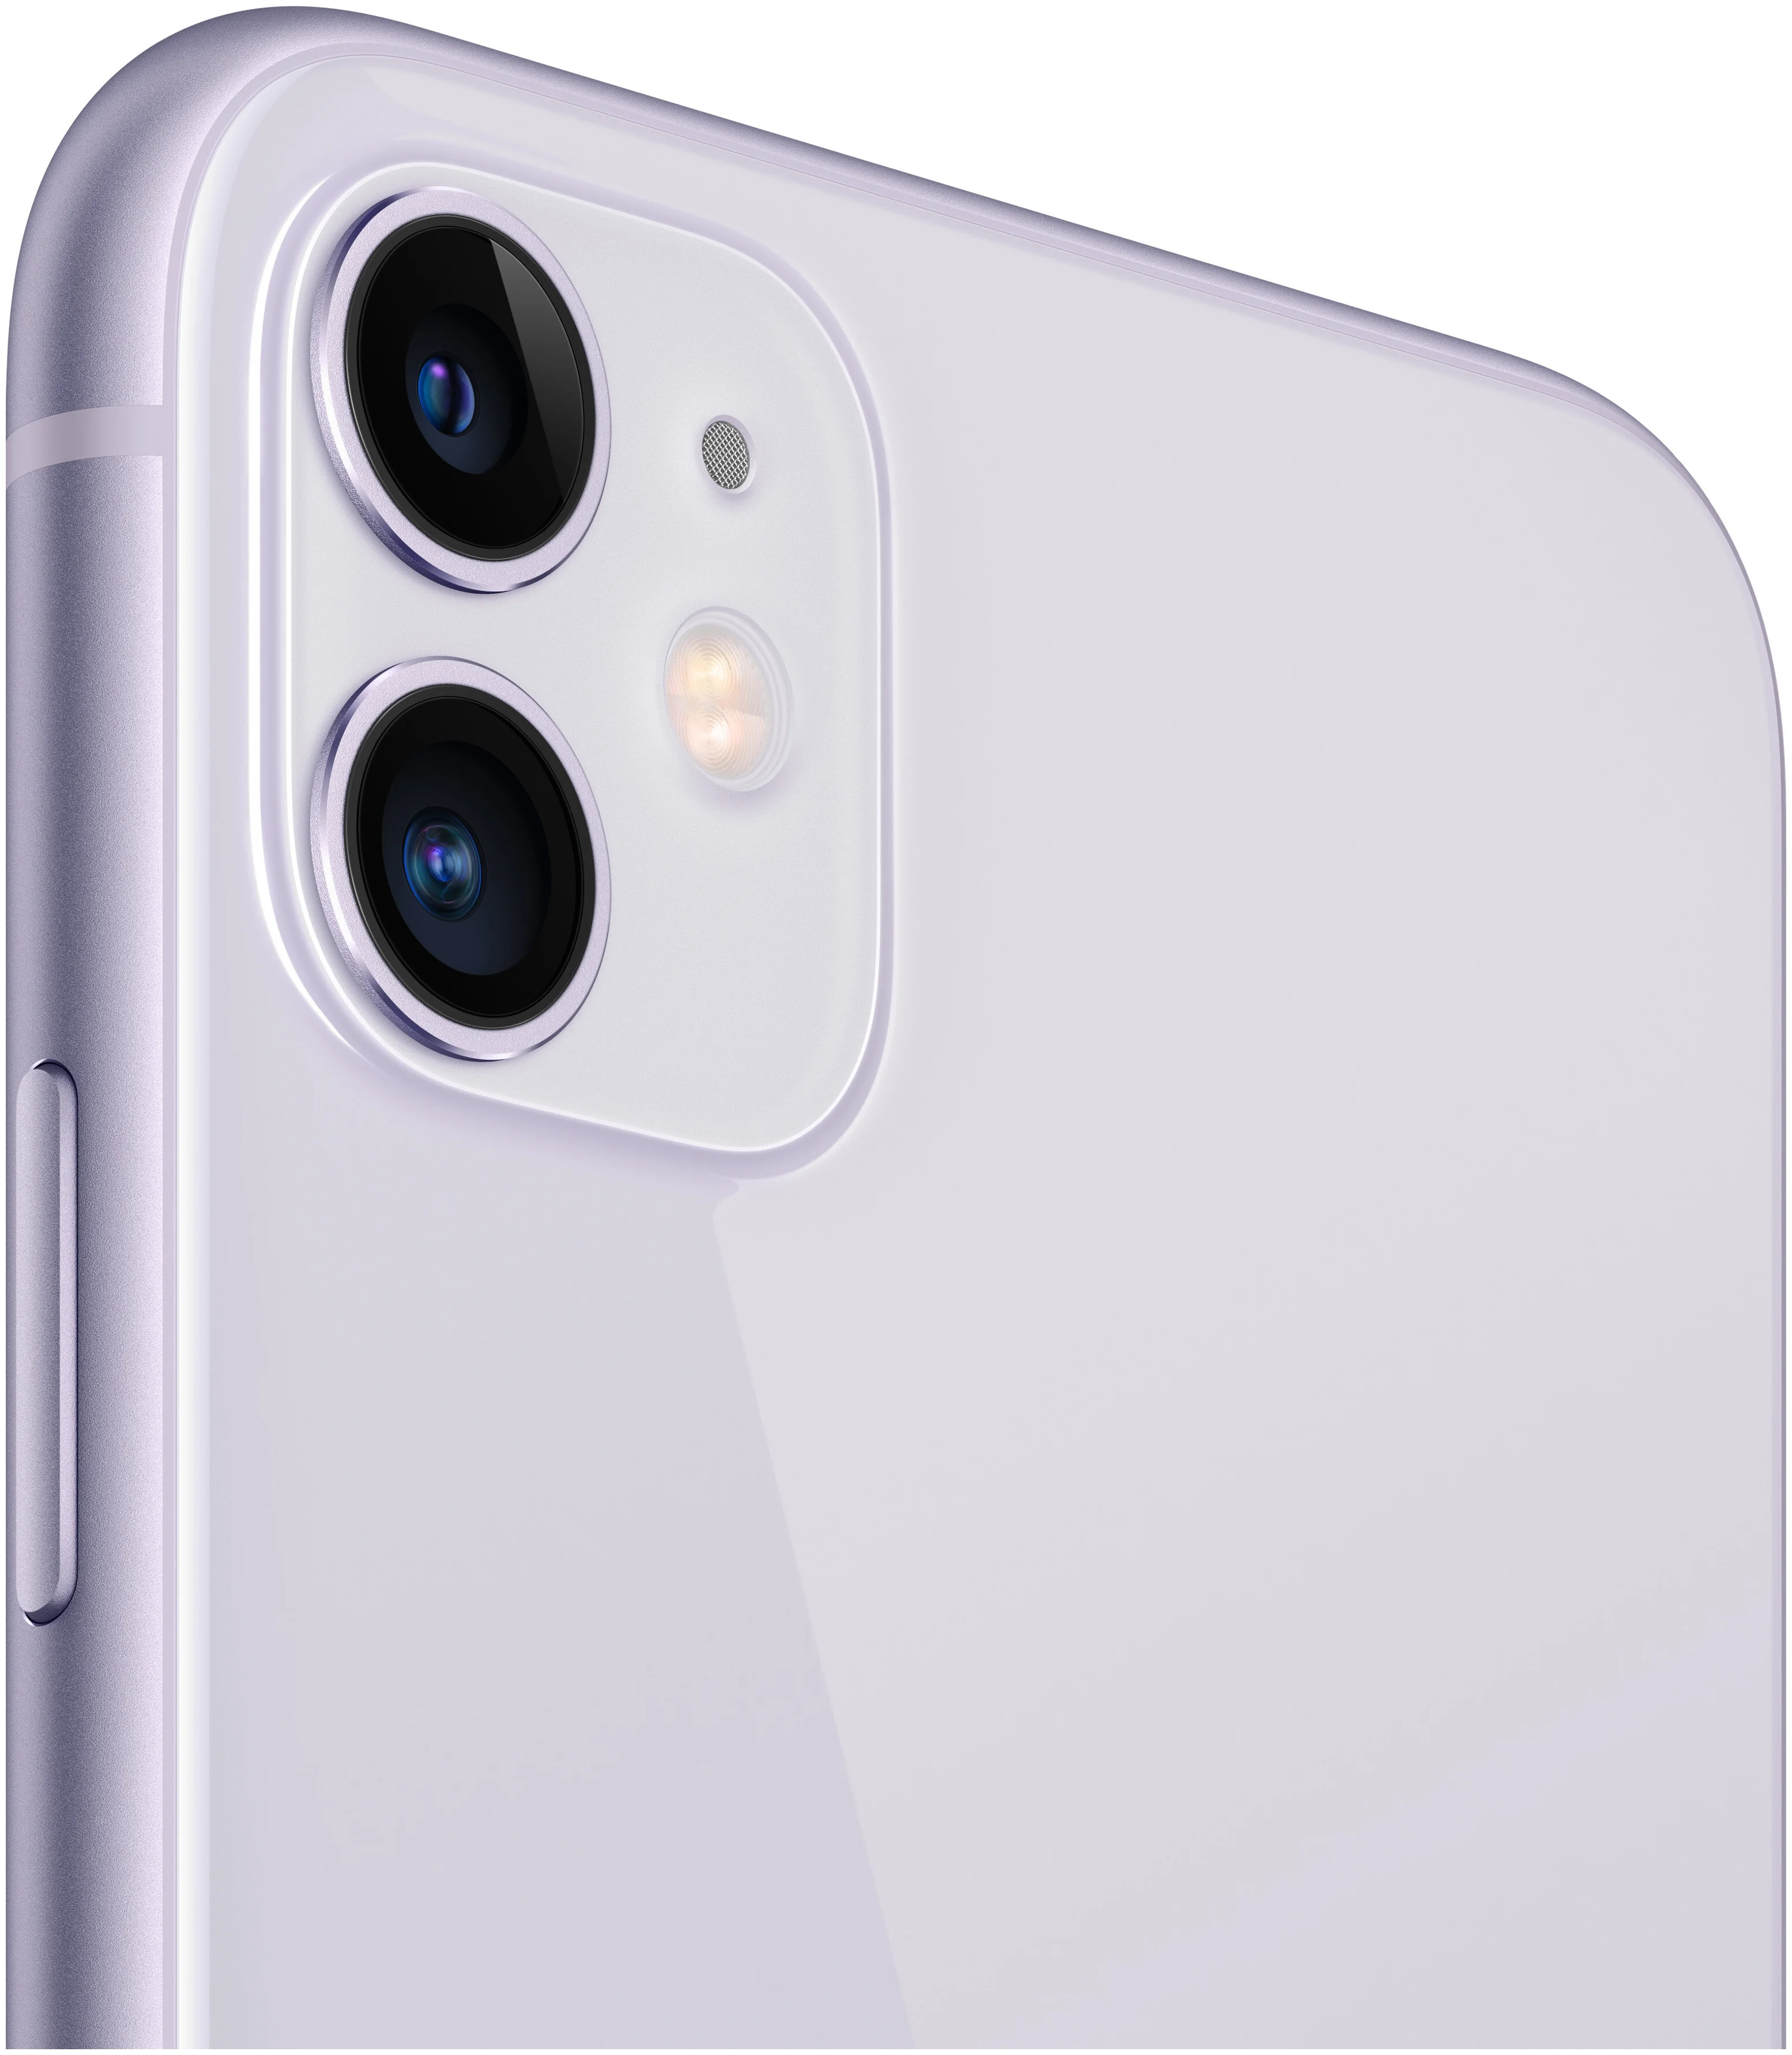 Apple iPhone 11 128GB - двойная камера: 12 МП, 12 МП